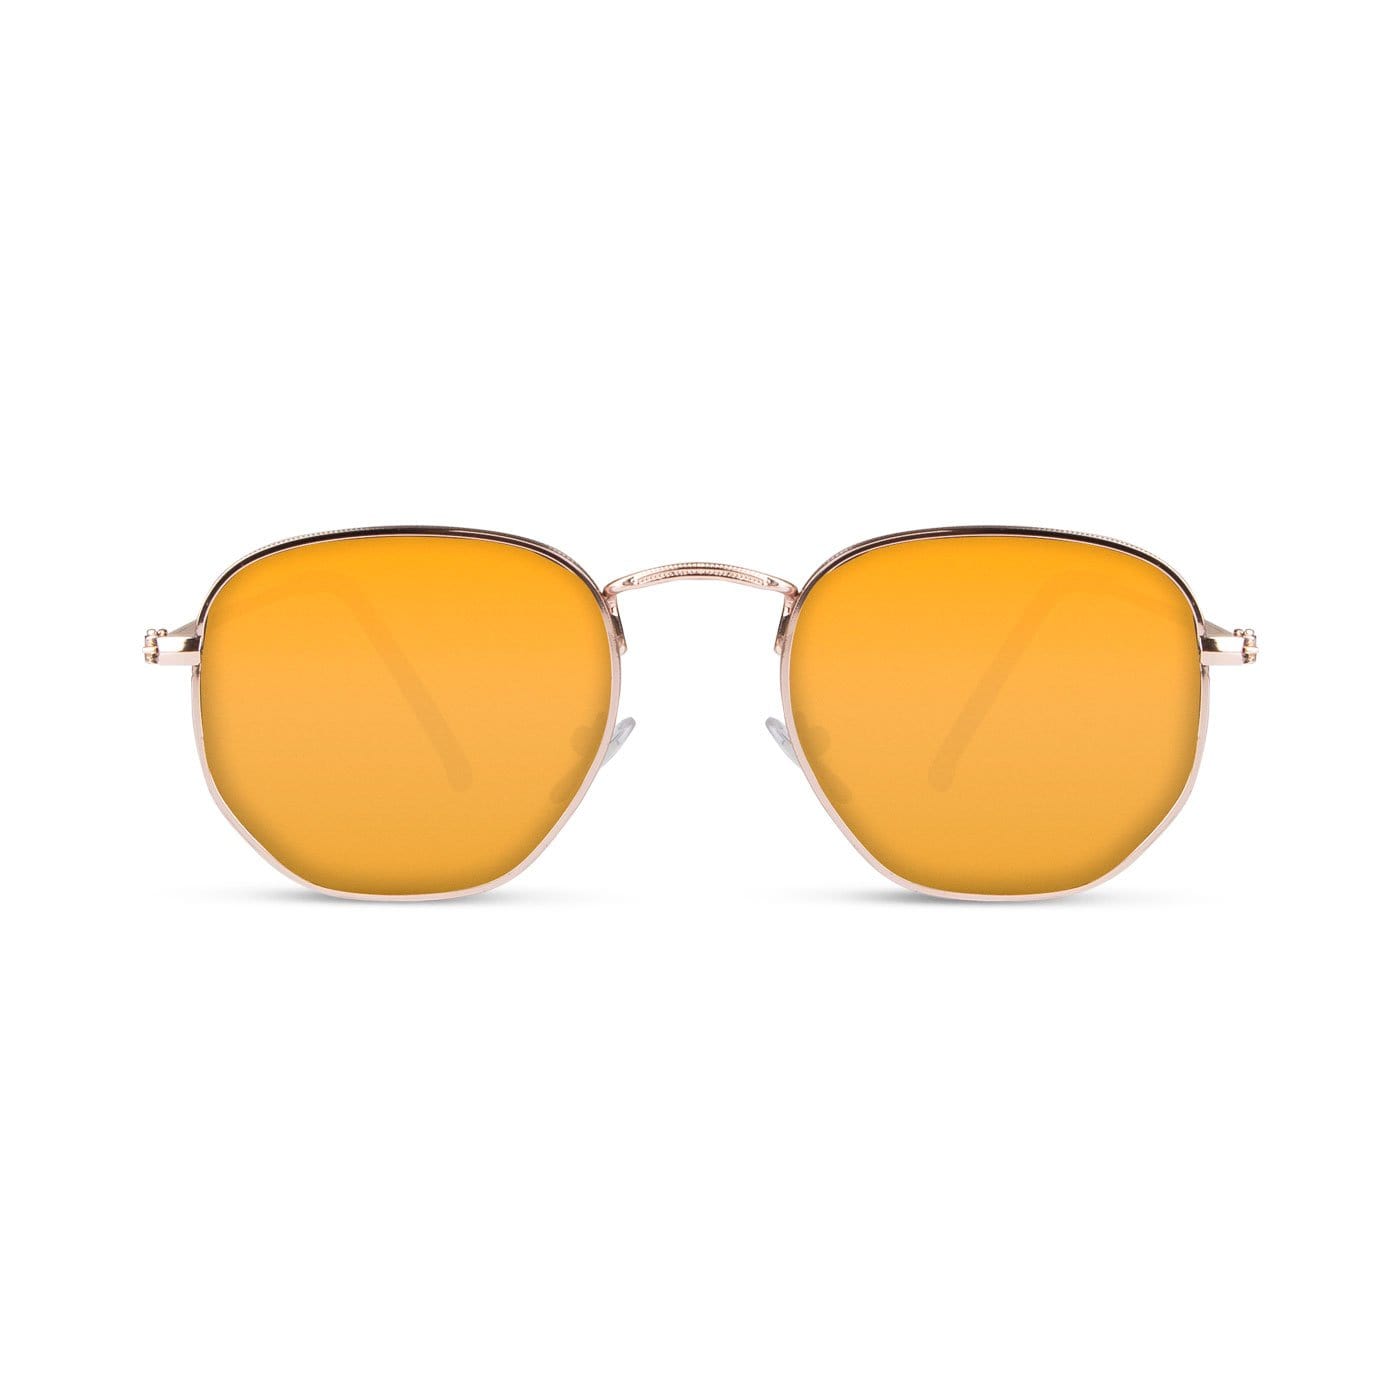 Samui Gold / Orange Sunglasses